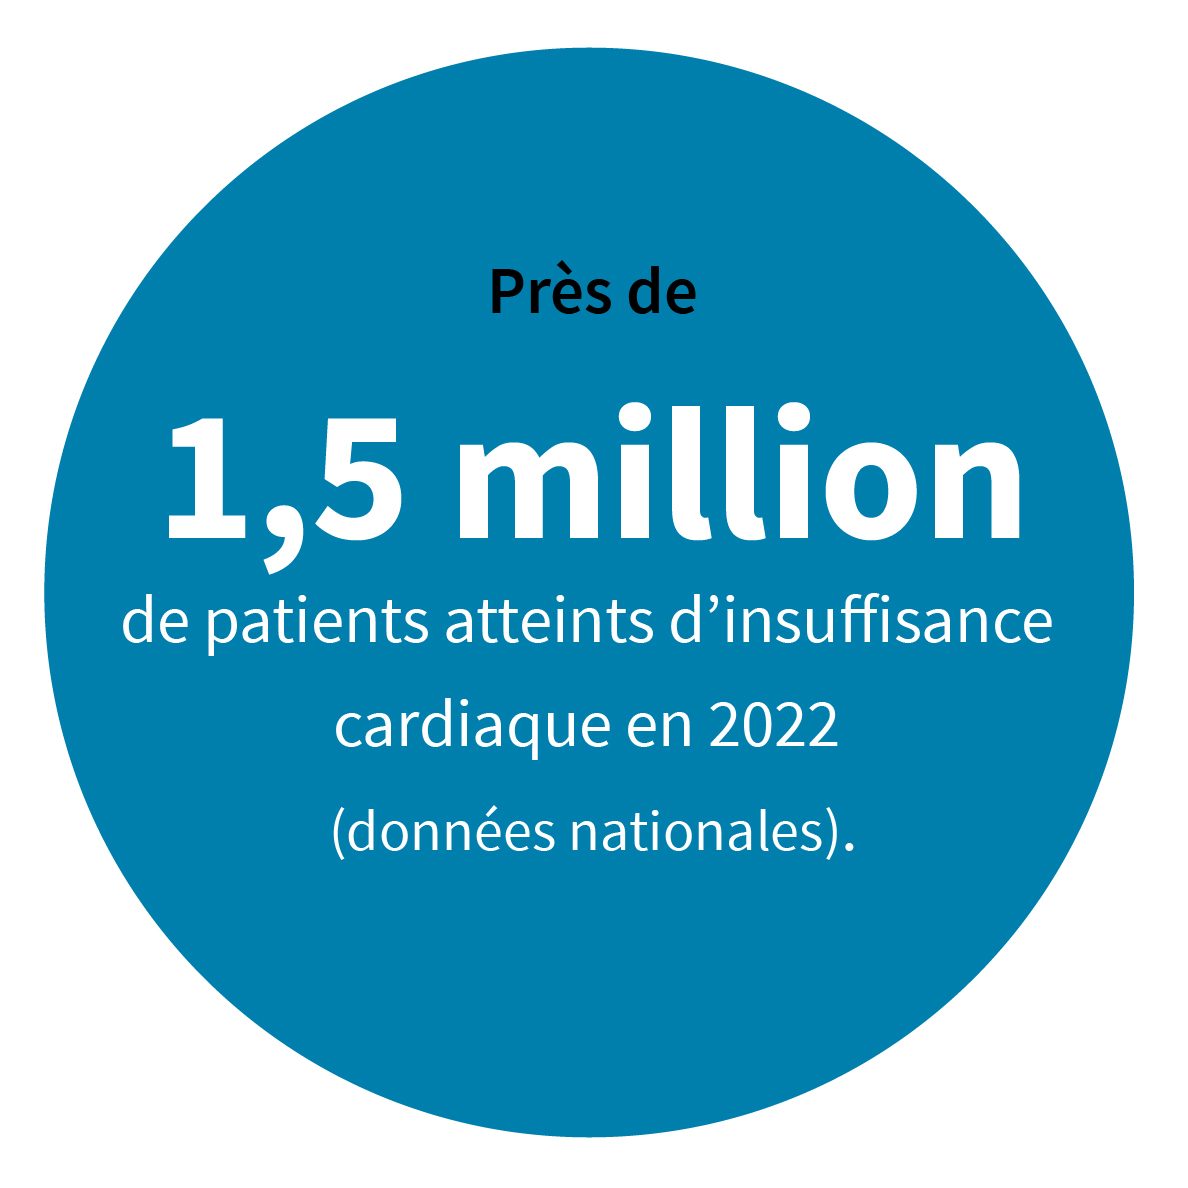 Près de 1,5 million de patients atteints d’insuffisance cardiaque en 2022 (données nationales).